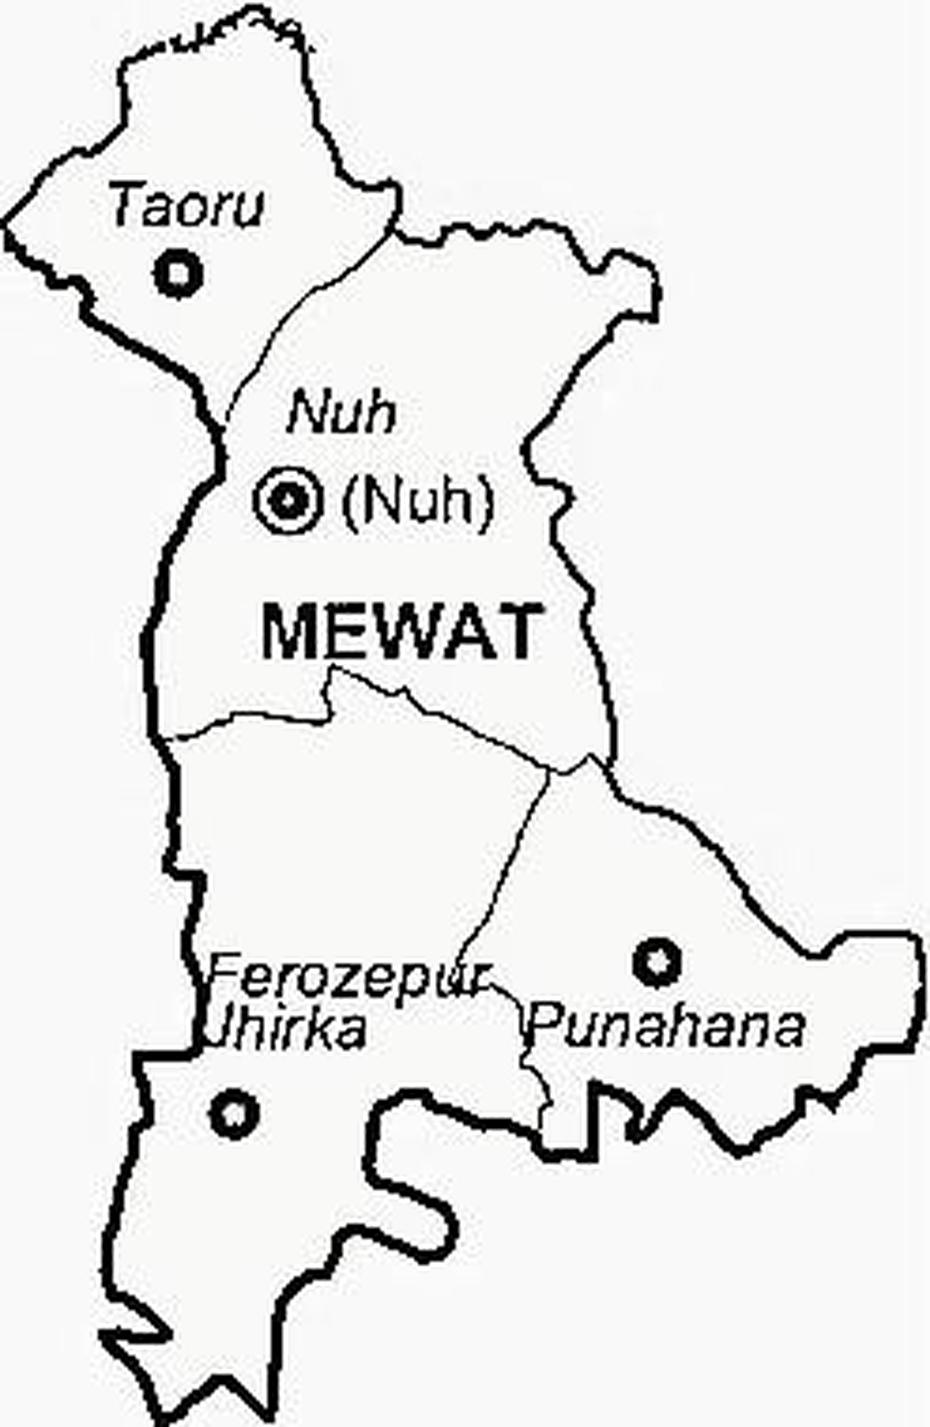 Mewat District | Mewat District Map, Mānwat, India, Siliguri Ward, Jalpaiguri